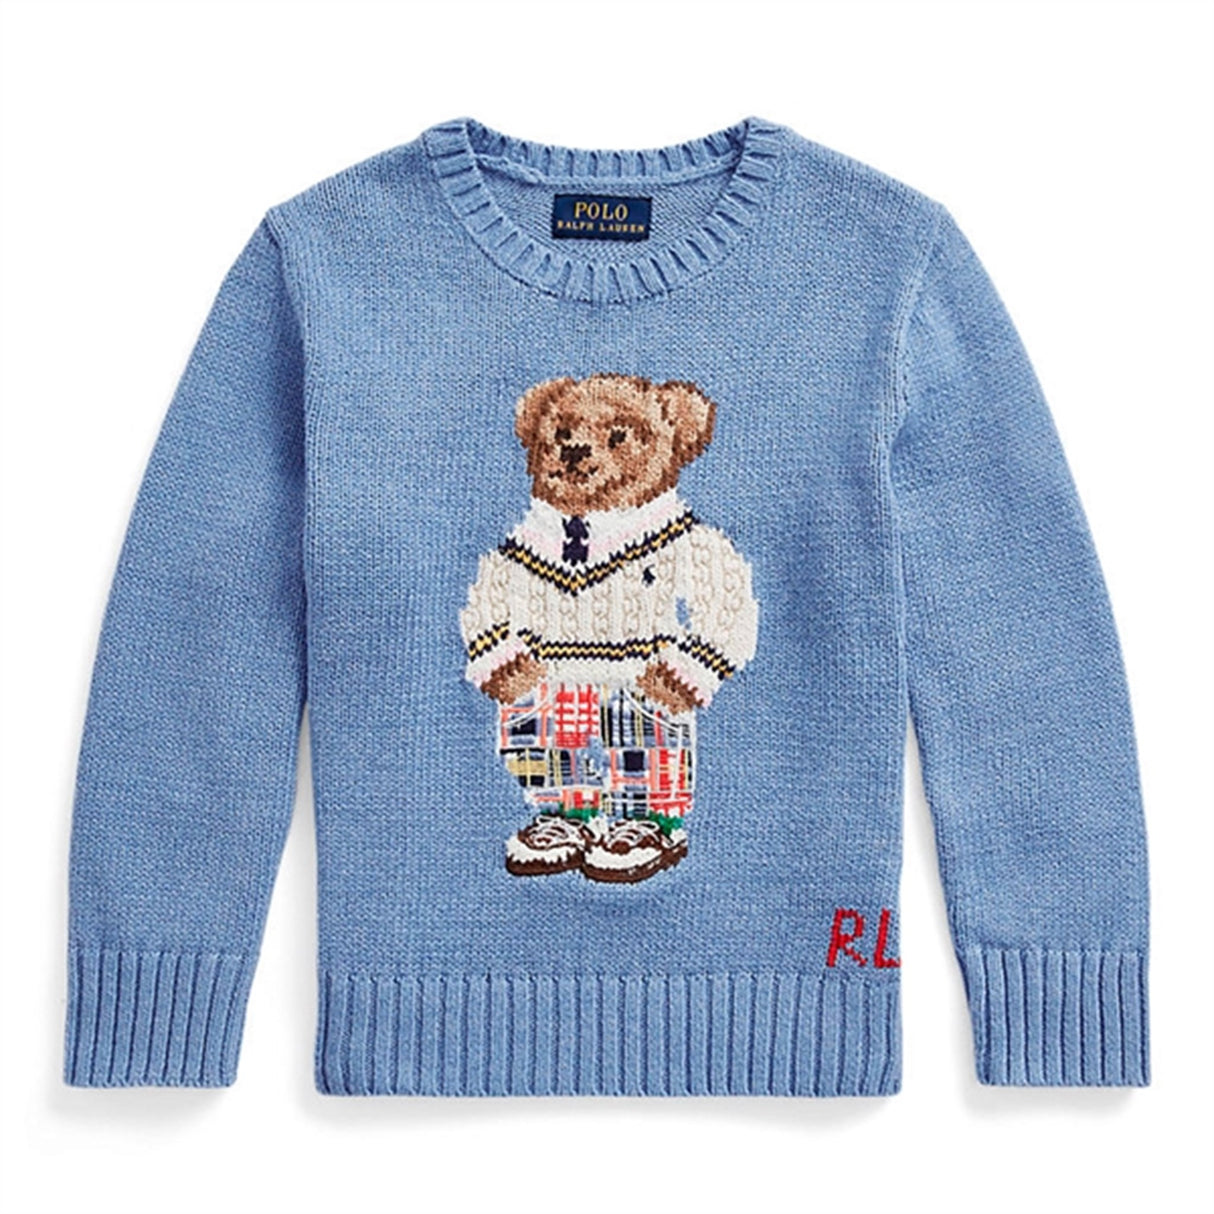 Polo Ralph Lauren Bear Knitted Sweater Blue